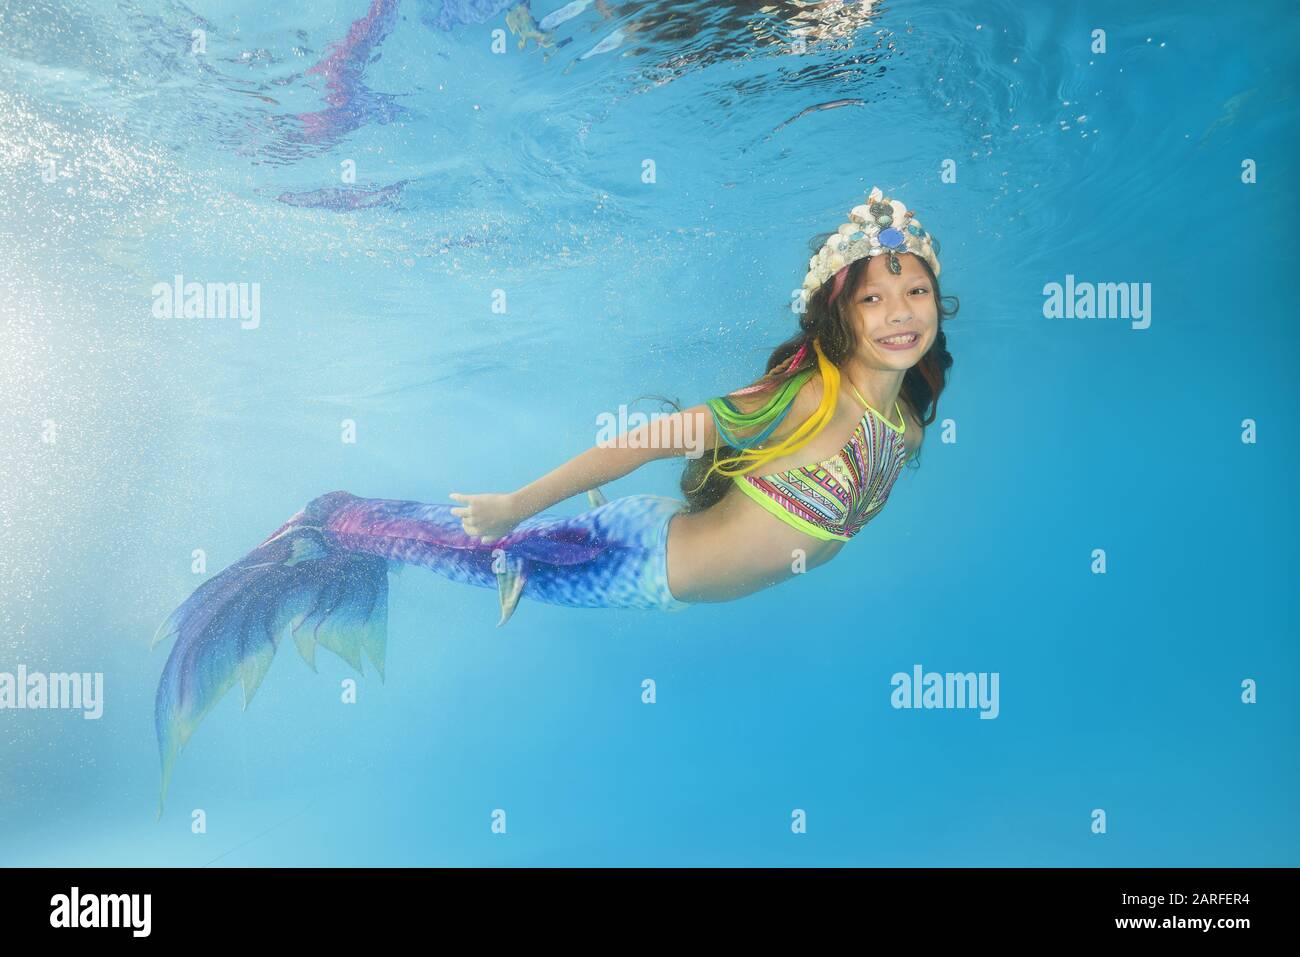 Ein Mädchen in einer Meerjungfrau wirft unter Wasser in einem Pool auf.  Junges, wunderschönes Mädchen stellt sich unter Wasser in den Pool  Stockfotografie - Alamy